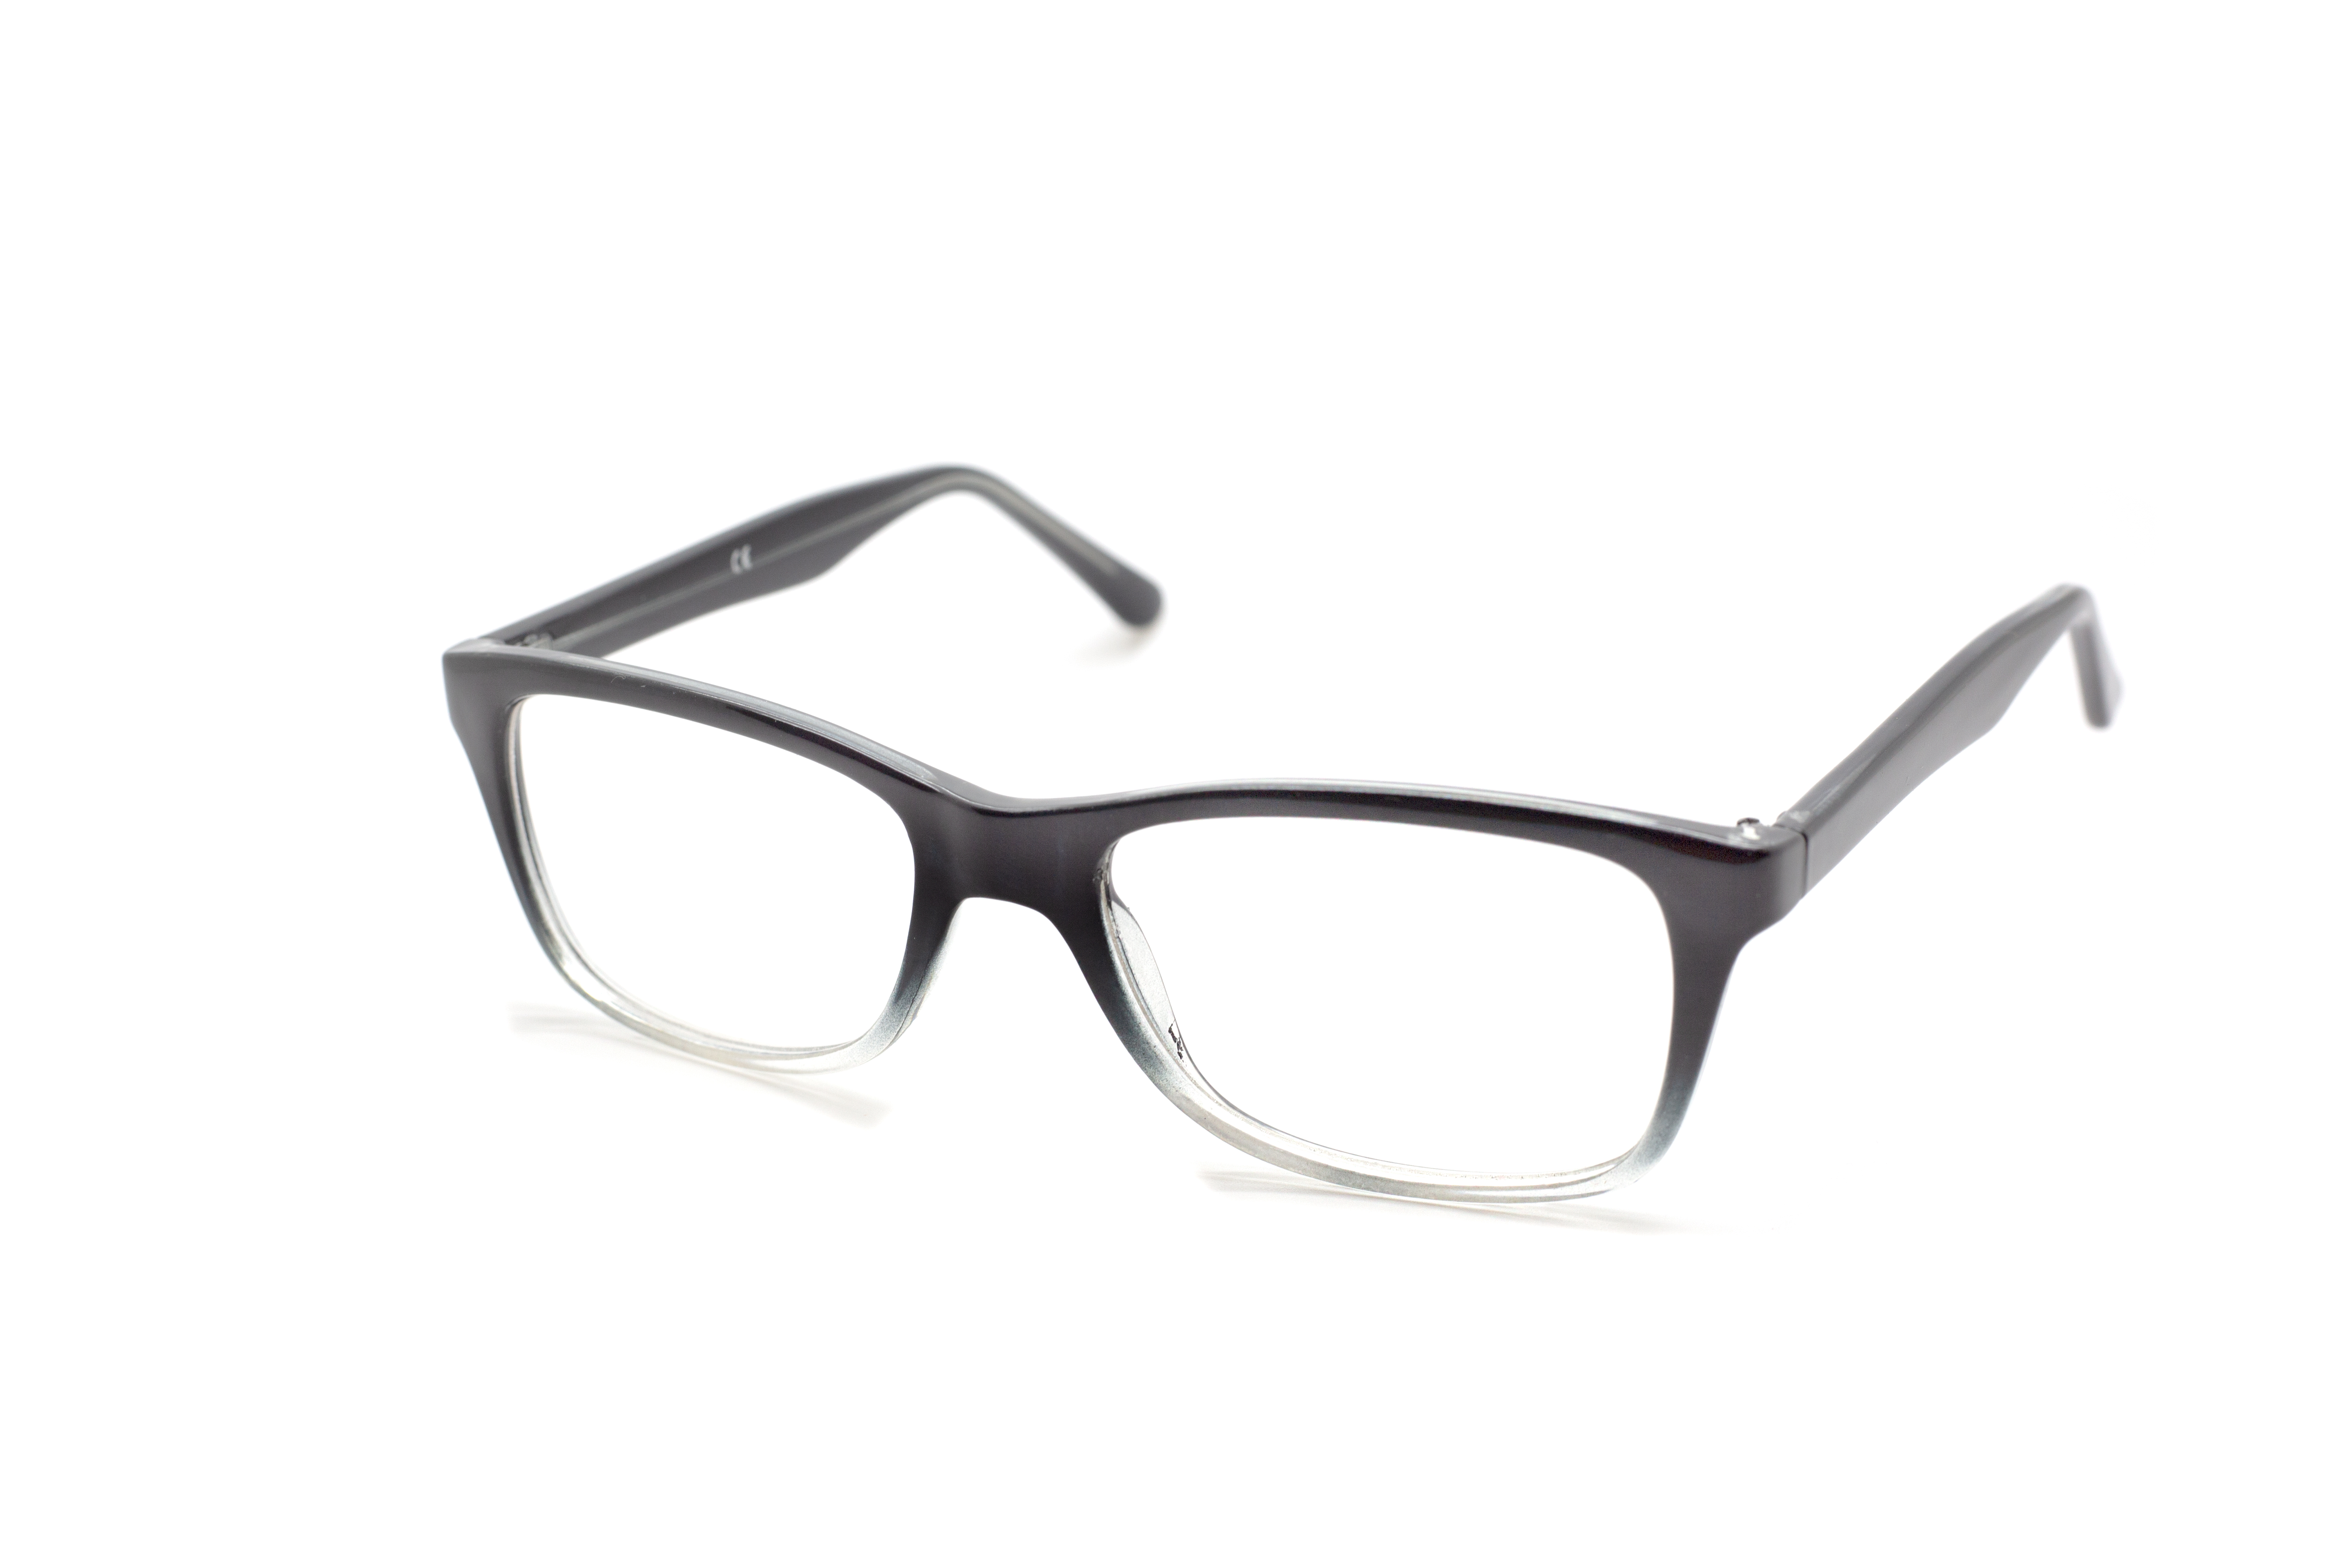 Own Label Glasses - White Optics Wholesale Glasses